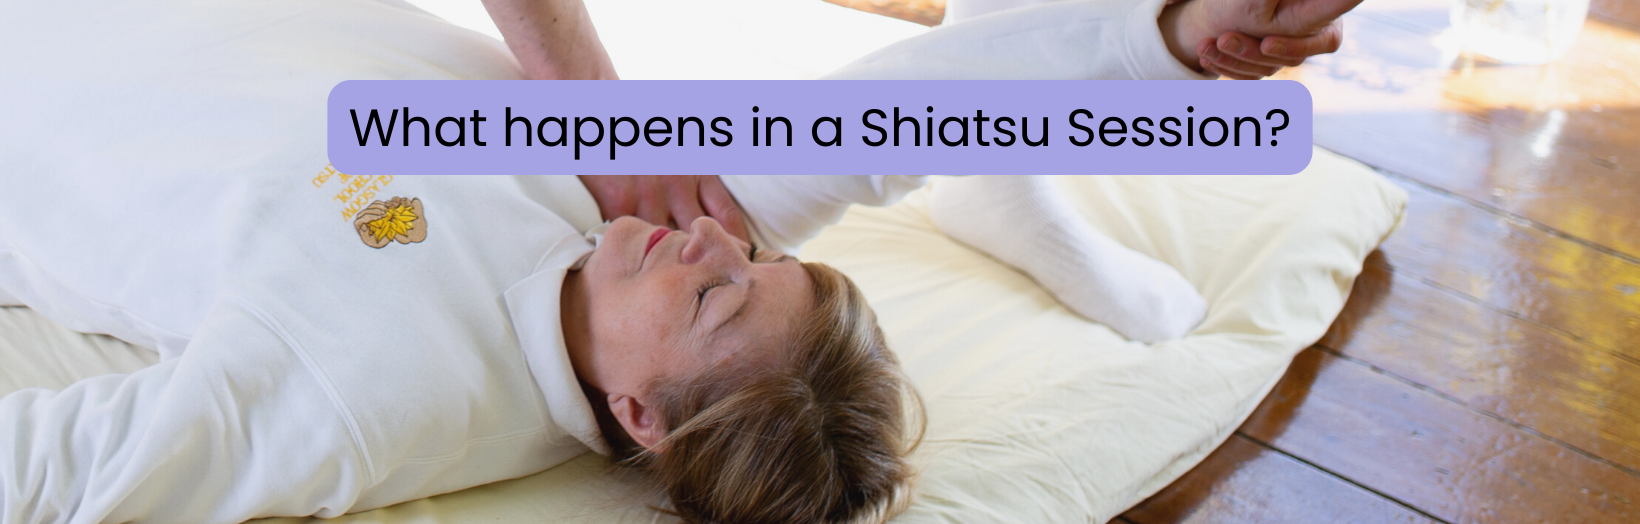 What happens in a Shiatsu Session?